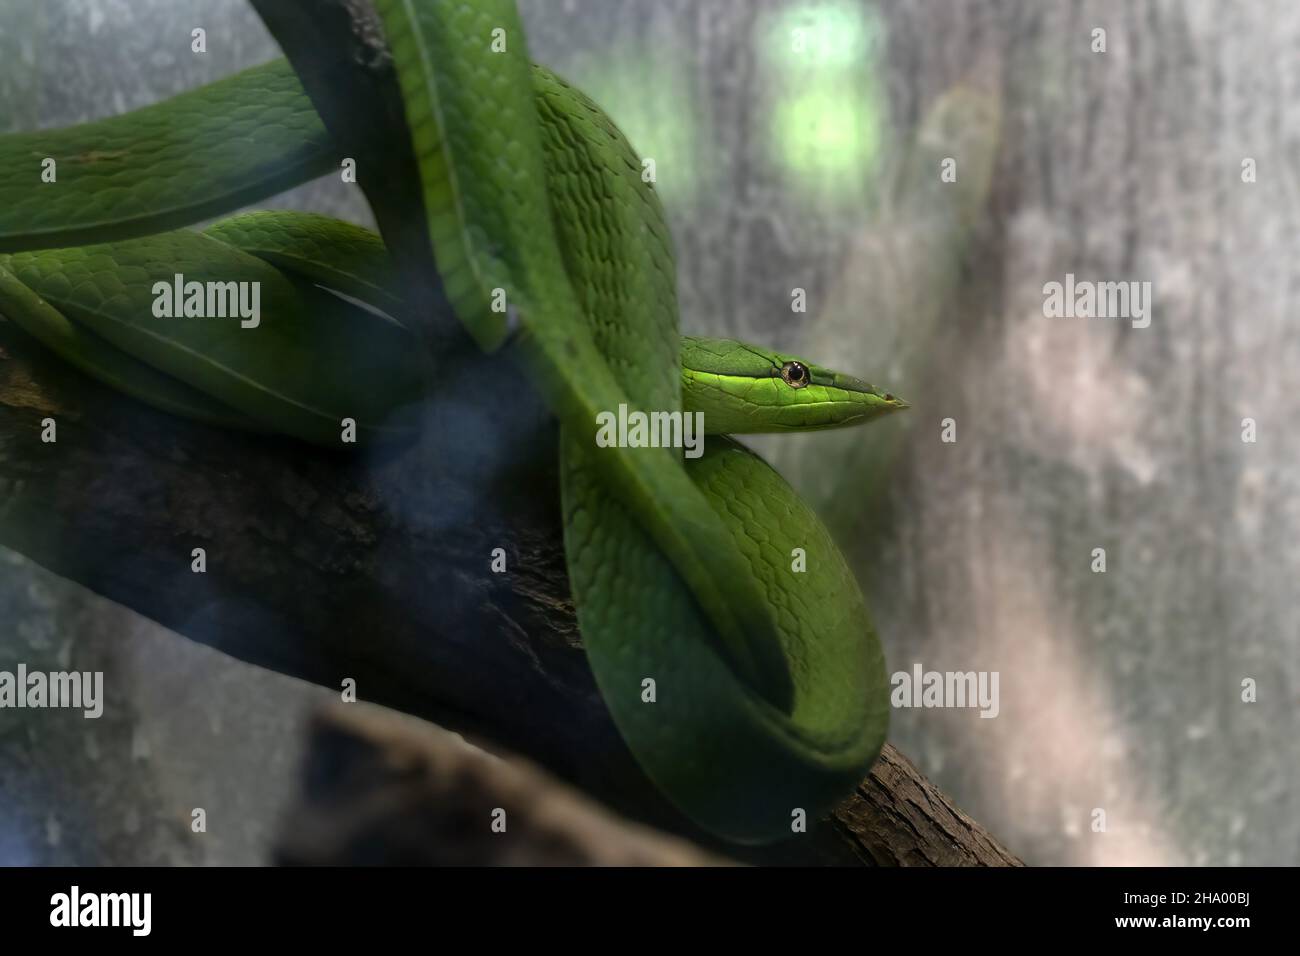 serpiente de vid verde en un retrato de árbol Foto de stock